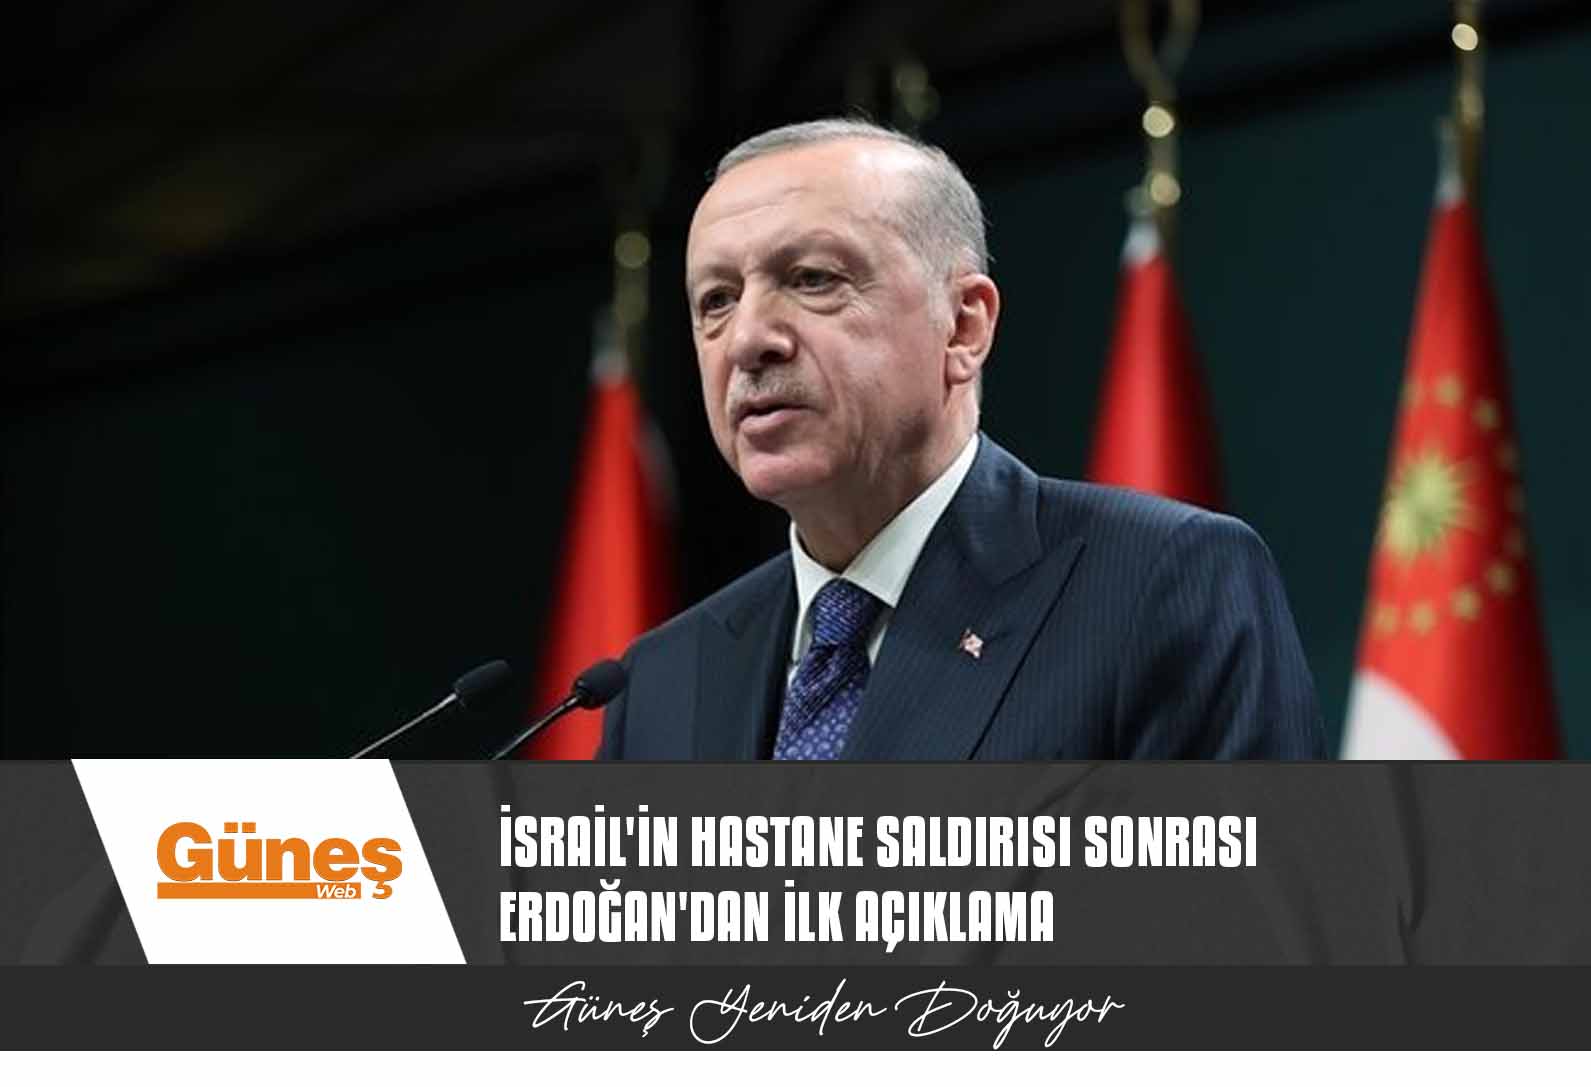 Son dakika! İsrail’in hastane saldırısı sonrası Cumhurbaşkanı Erdoğan’dan ilk açıklama